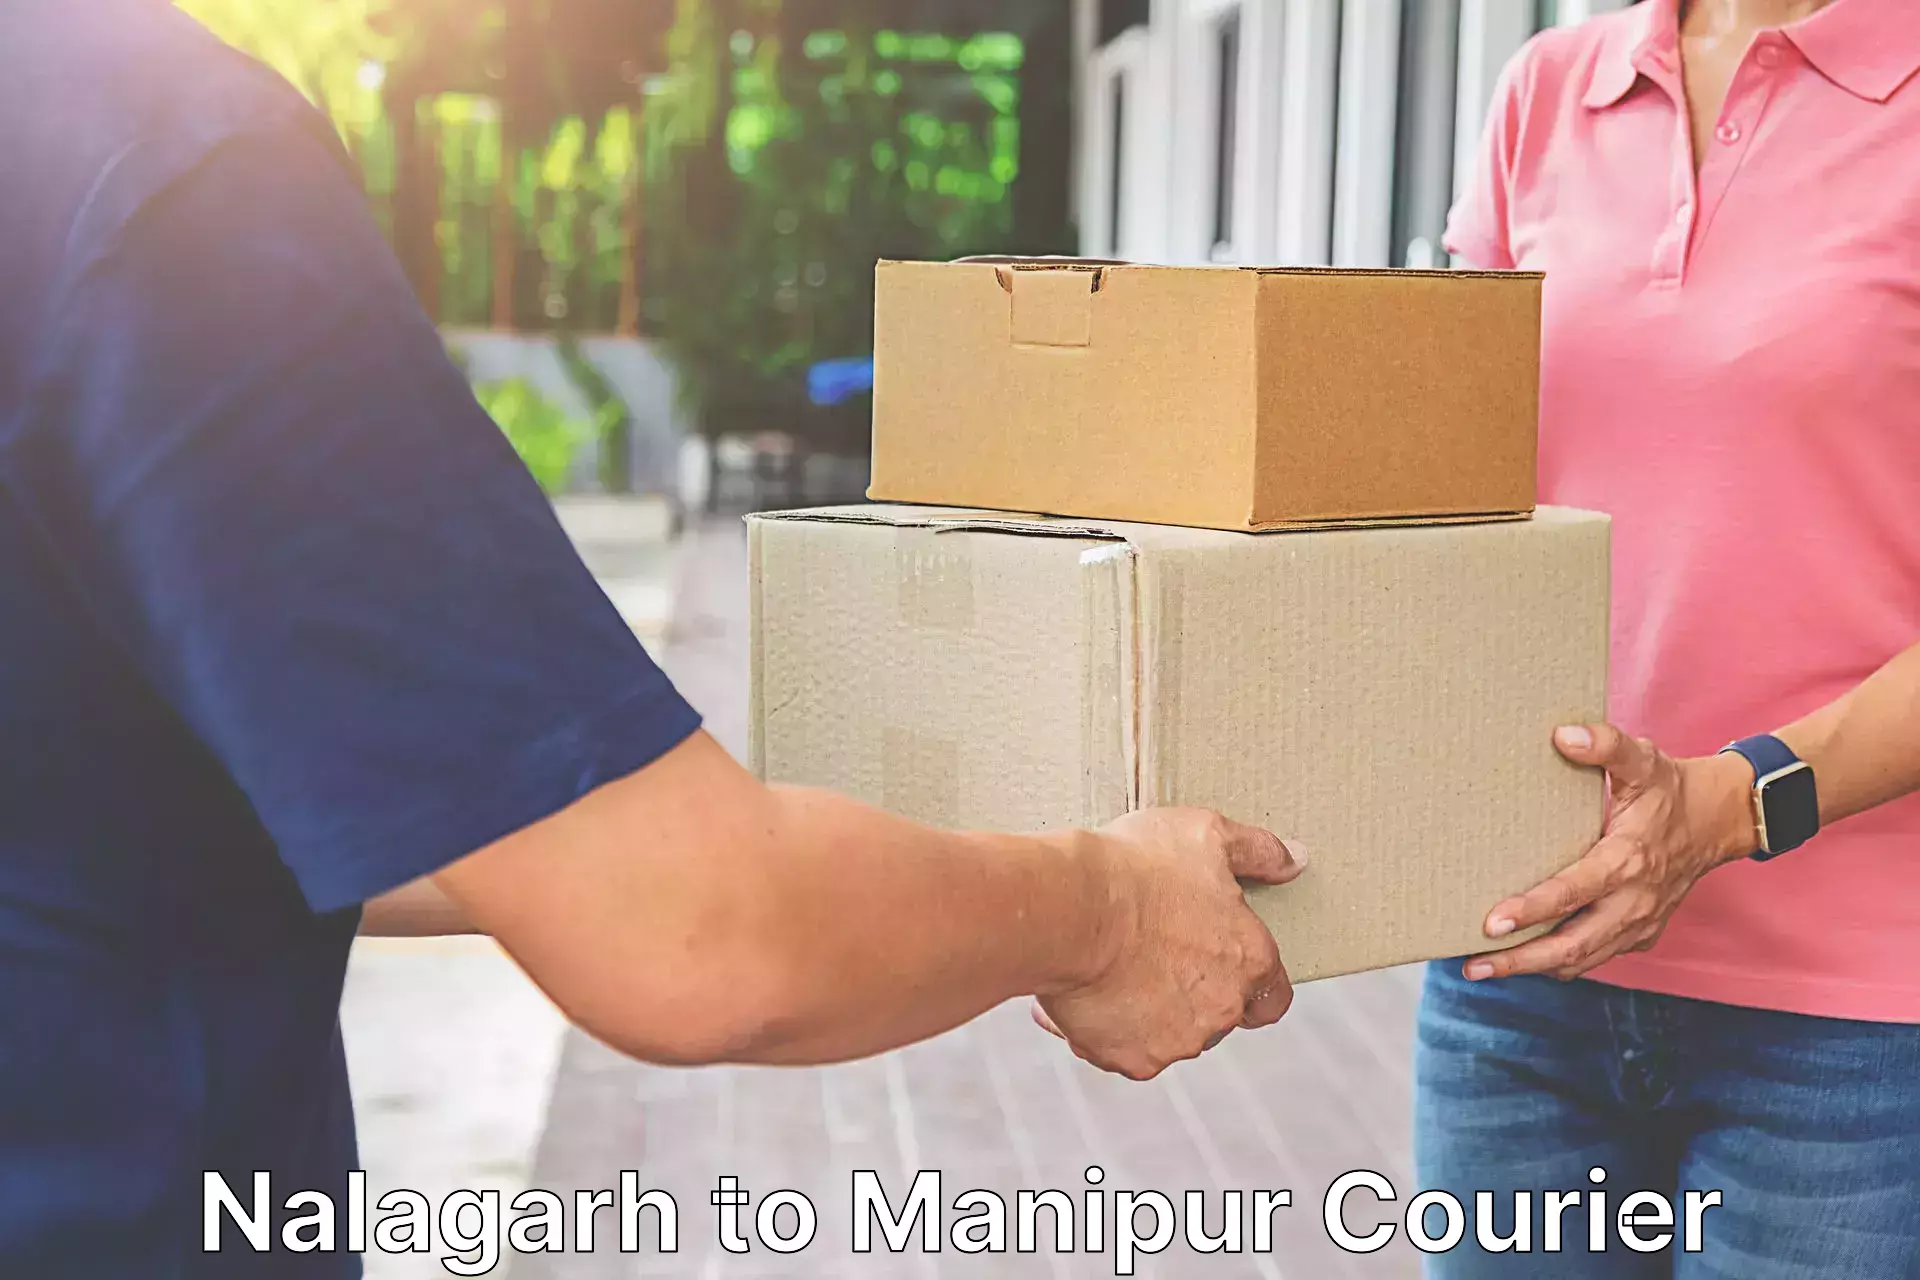 Speedy delivery service Nalagarh to Moirang